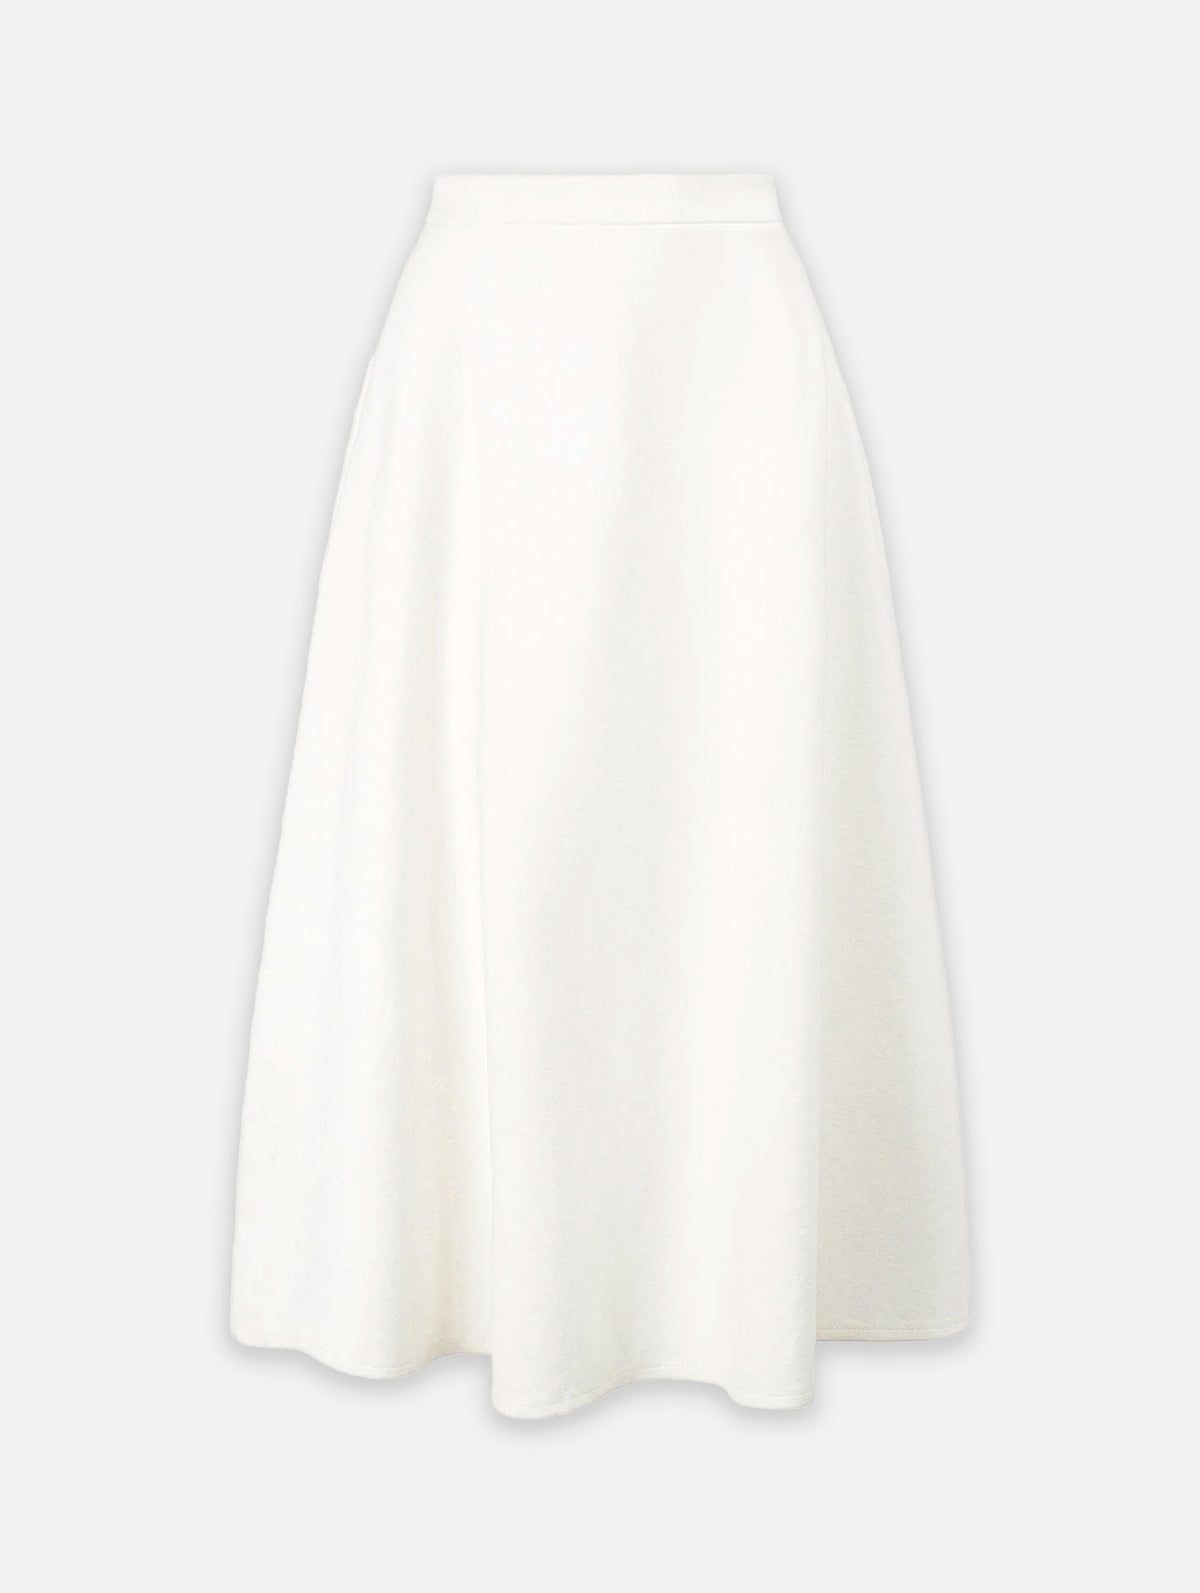 Lighthouse Skirt in Ivory